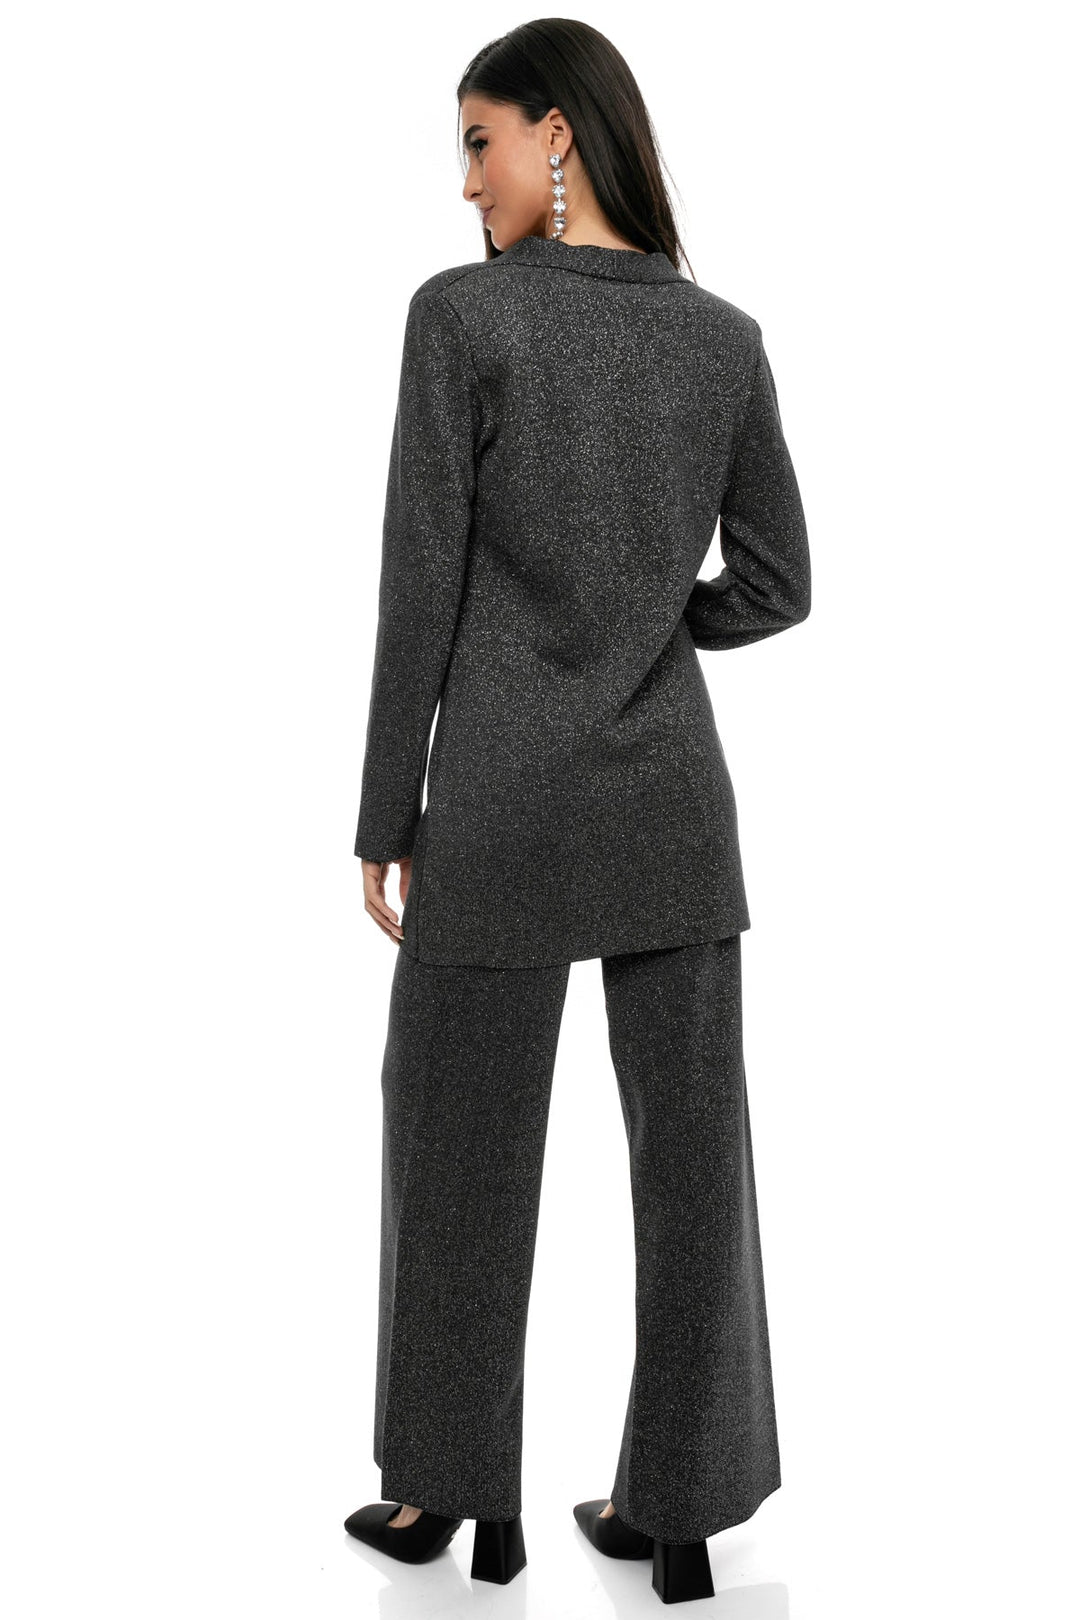 Κοστούμι με lurex νήμα πλεκτό Aggel Knitwear - A Collection Boutique